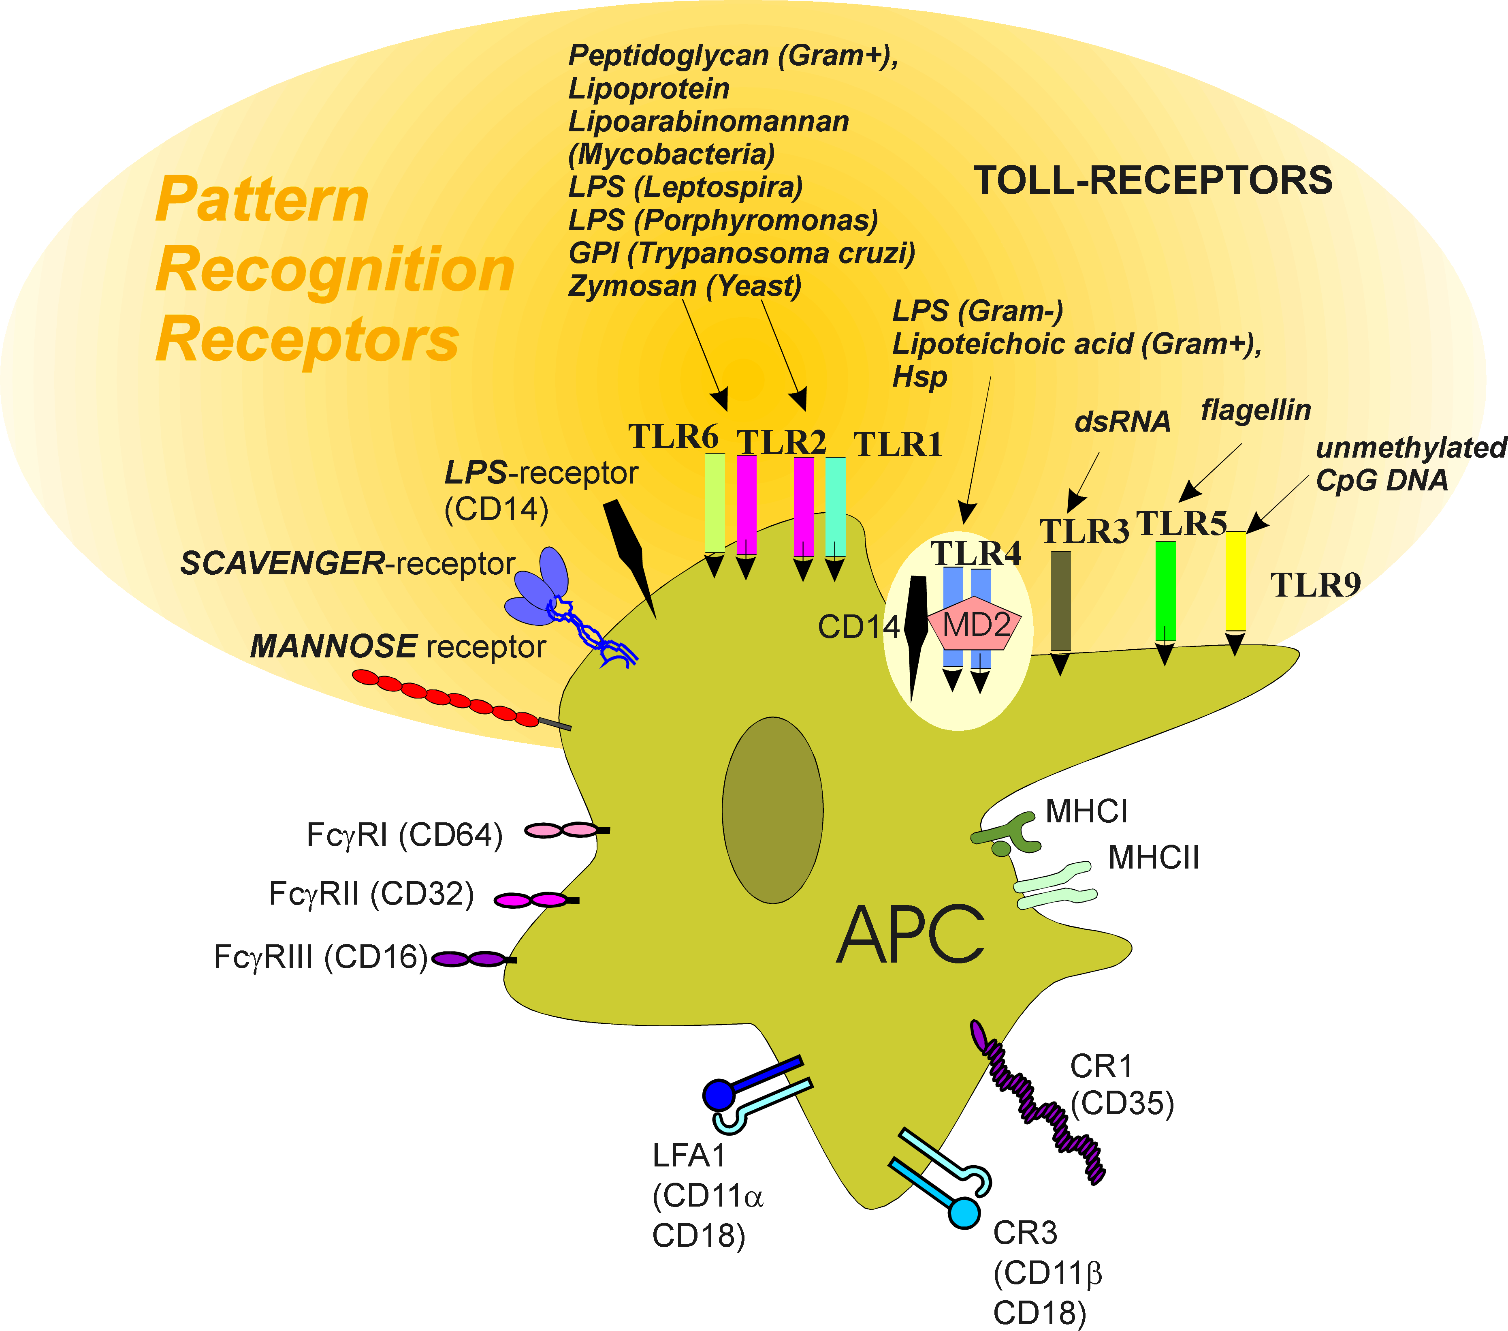 PRR (pattern recognition receptors) membránstruktúrák APC-ken patogén asszociált molekuláris mintázat